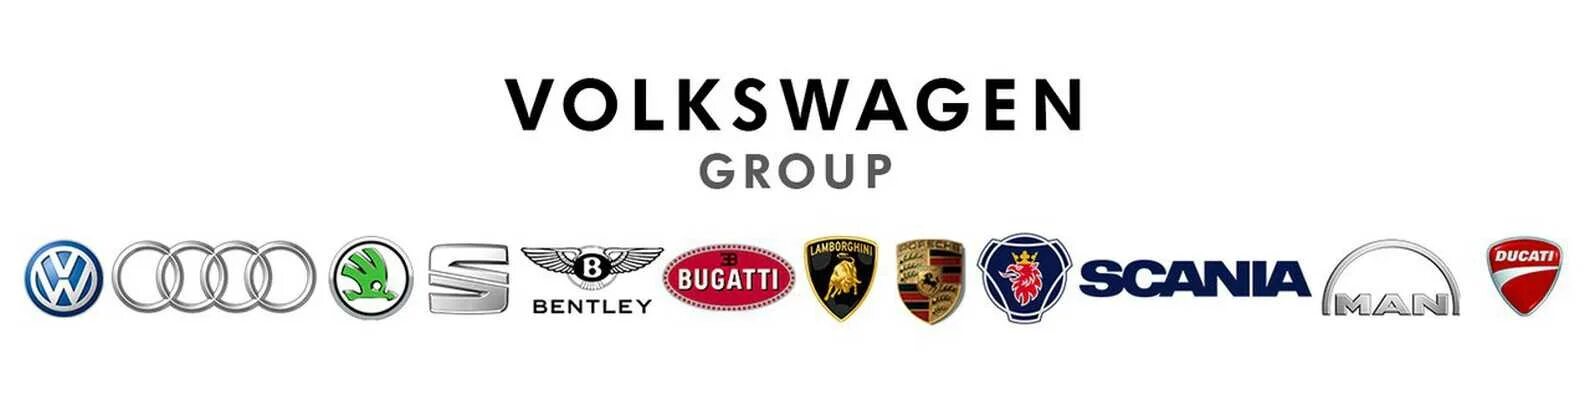 Фольксваген какие фирмы. Дочерние компании Фольксваген групп. Состав Фольксваген групп. VAG Volkswagen Audi Group. Марки VAG группы.